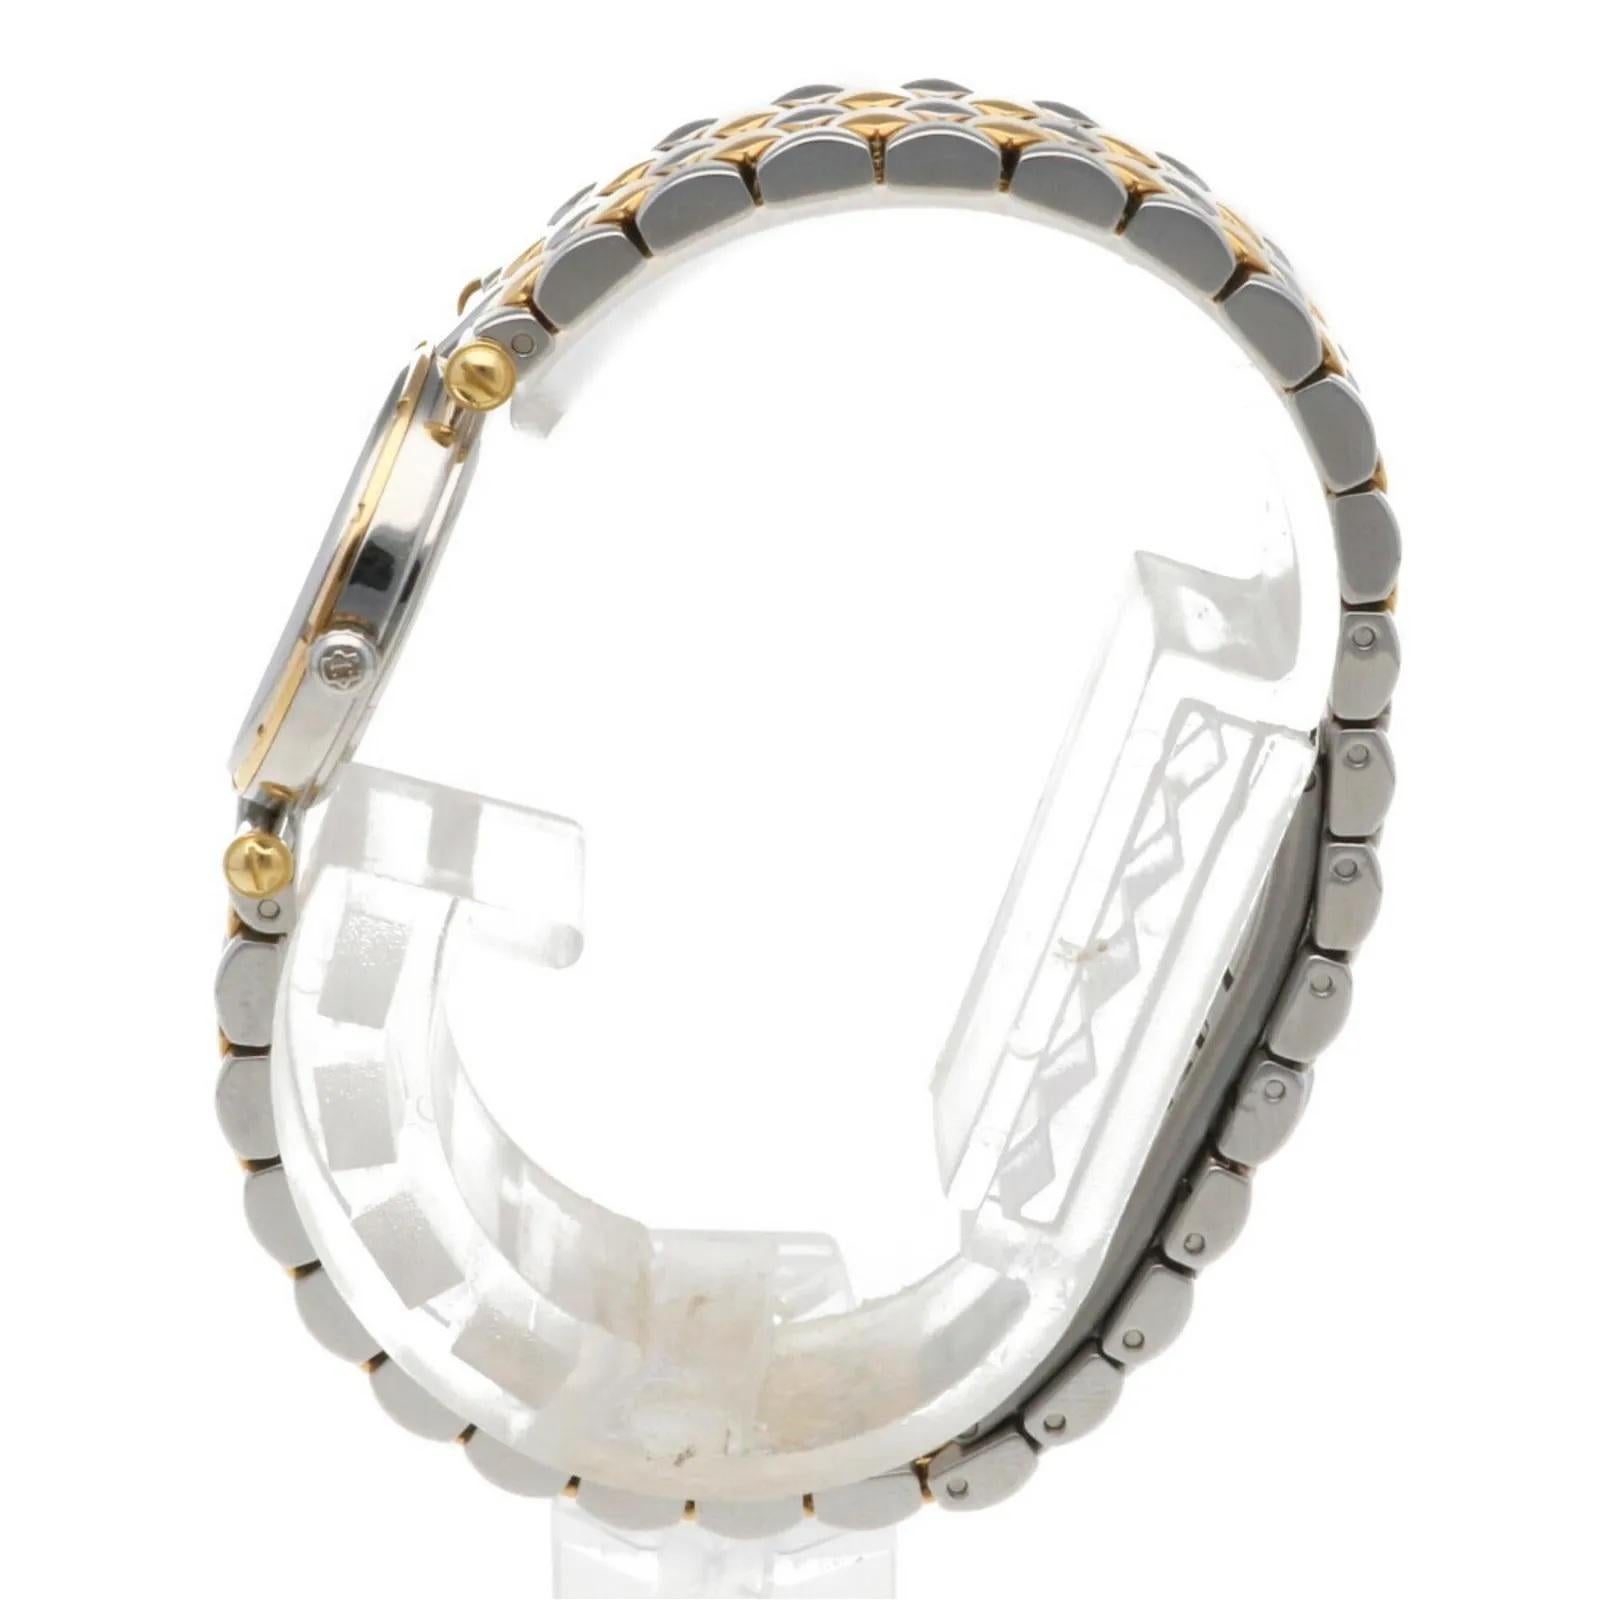 $8950 / Van Cleef & Arpels La Kollektion 31 mm Armbanduhr / 18K Gold & SS für Damen oder Herren